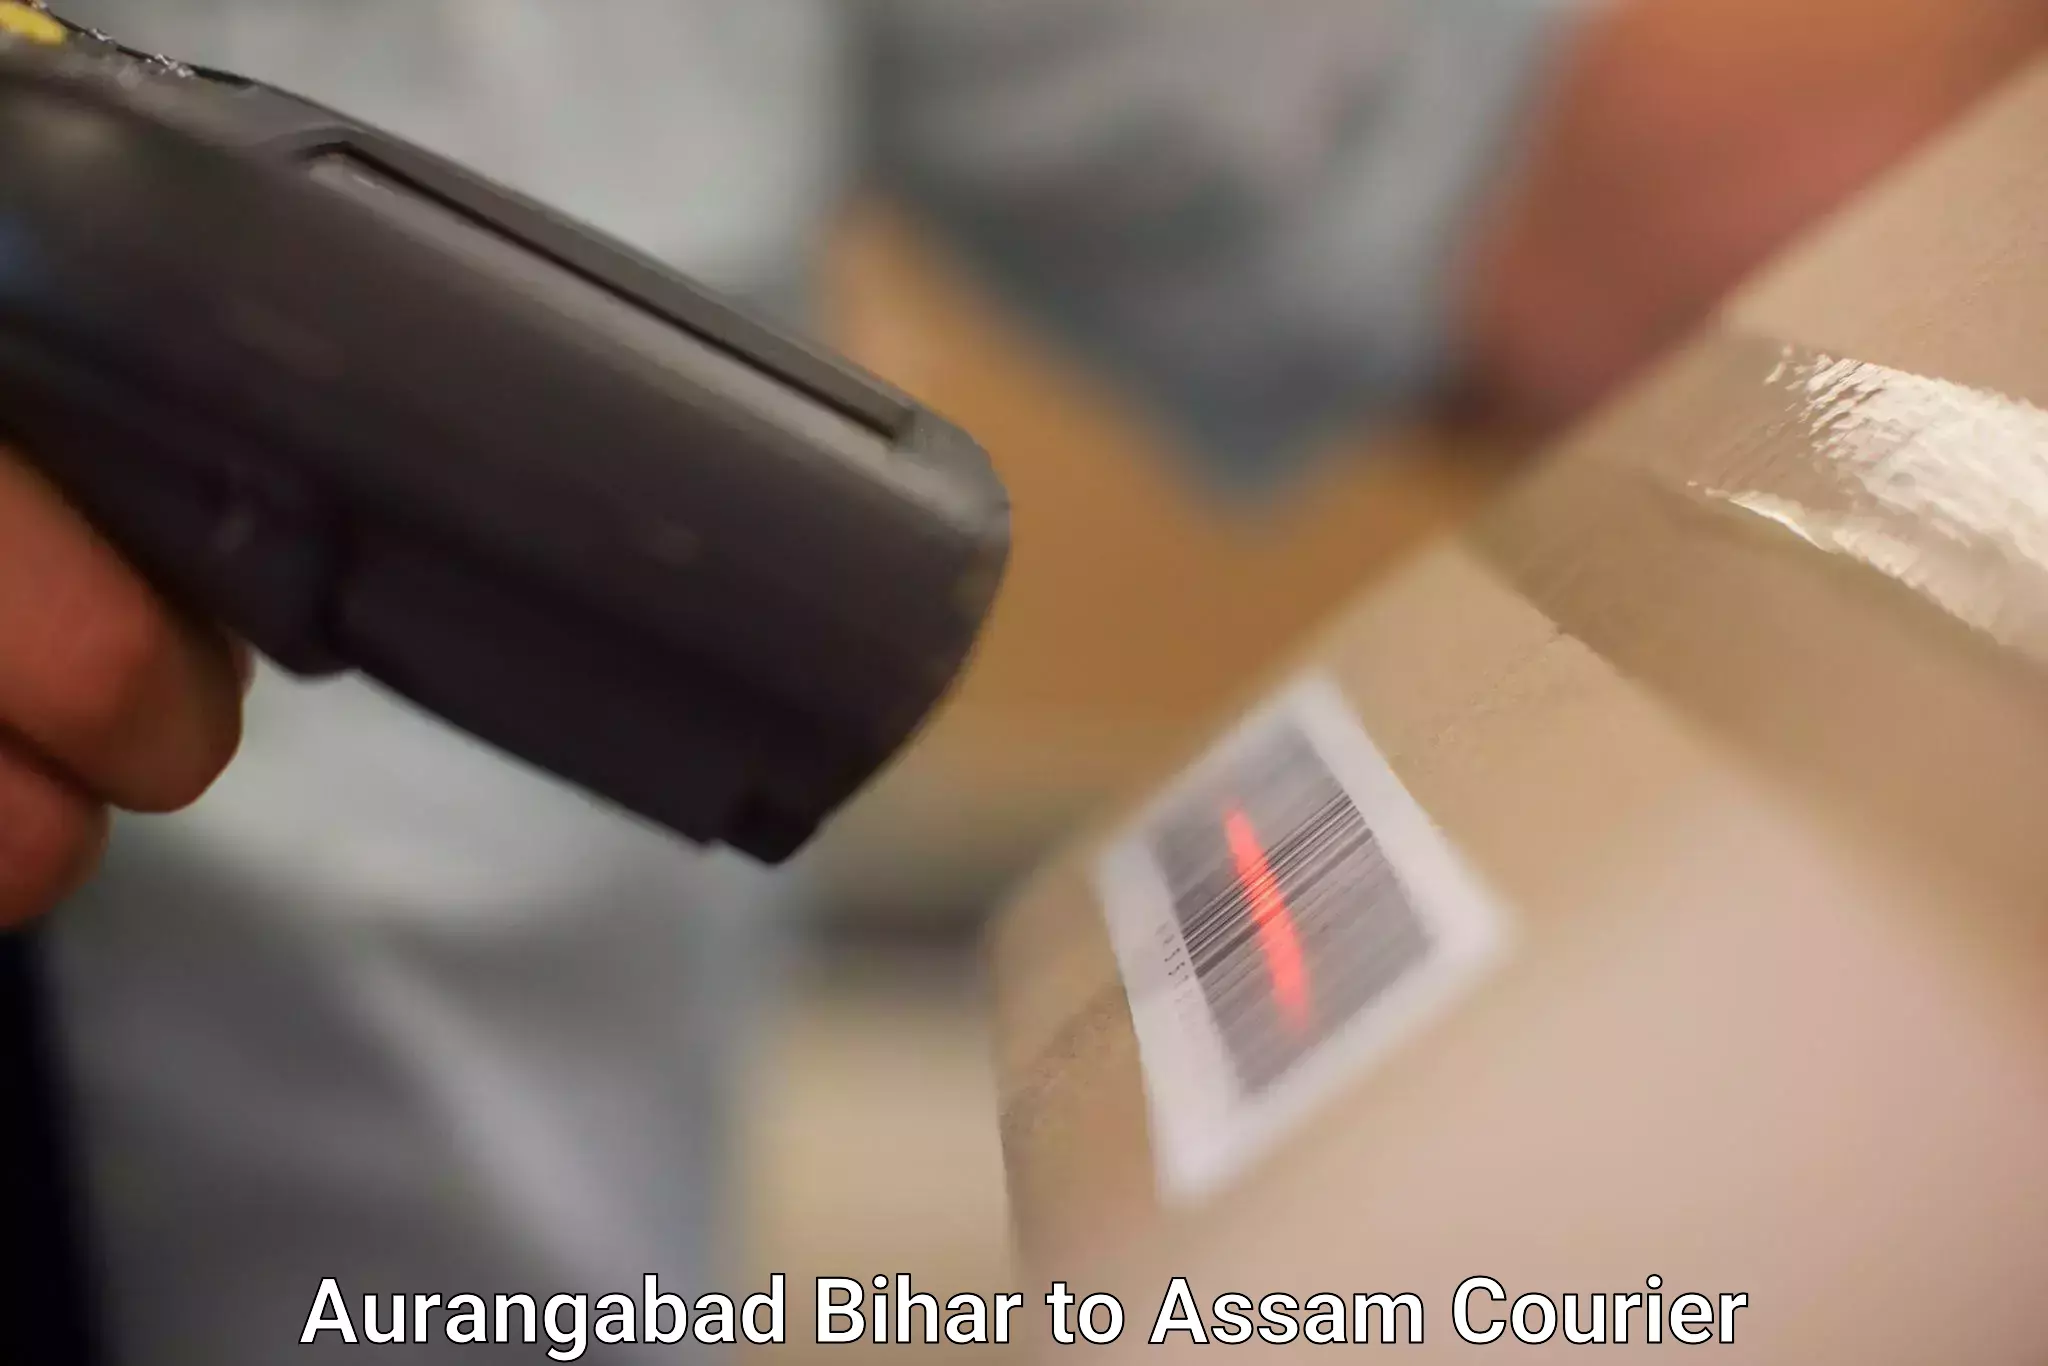 Express postal services Aurangabad Bihar to Assam